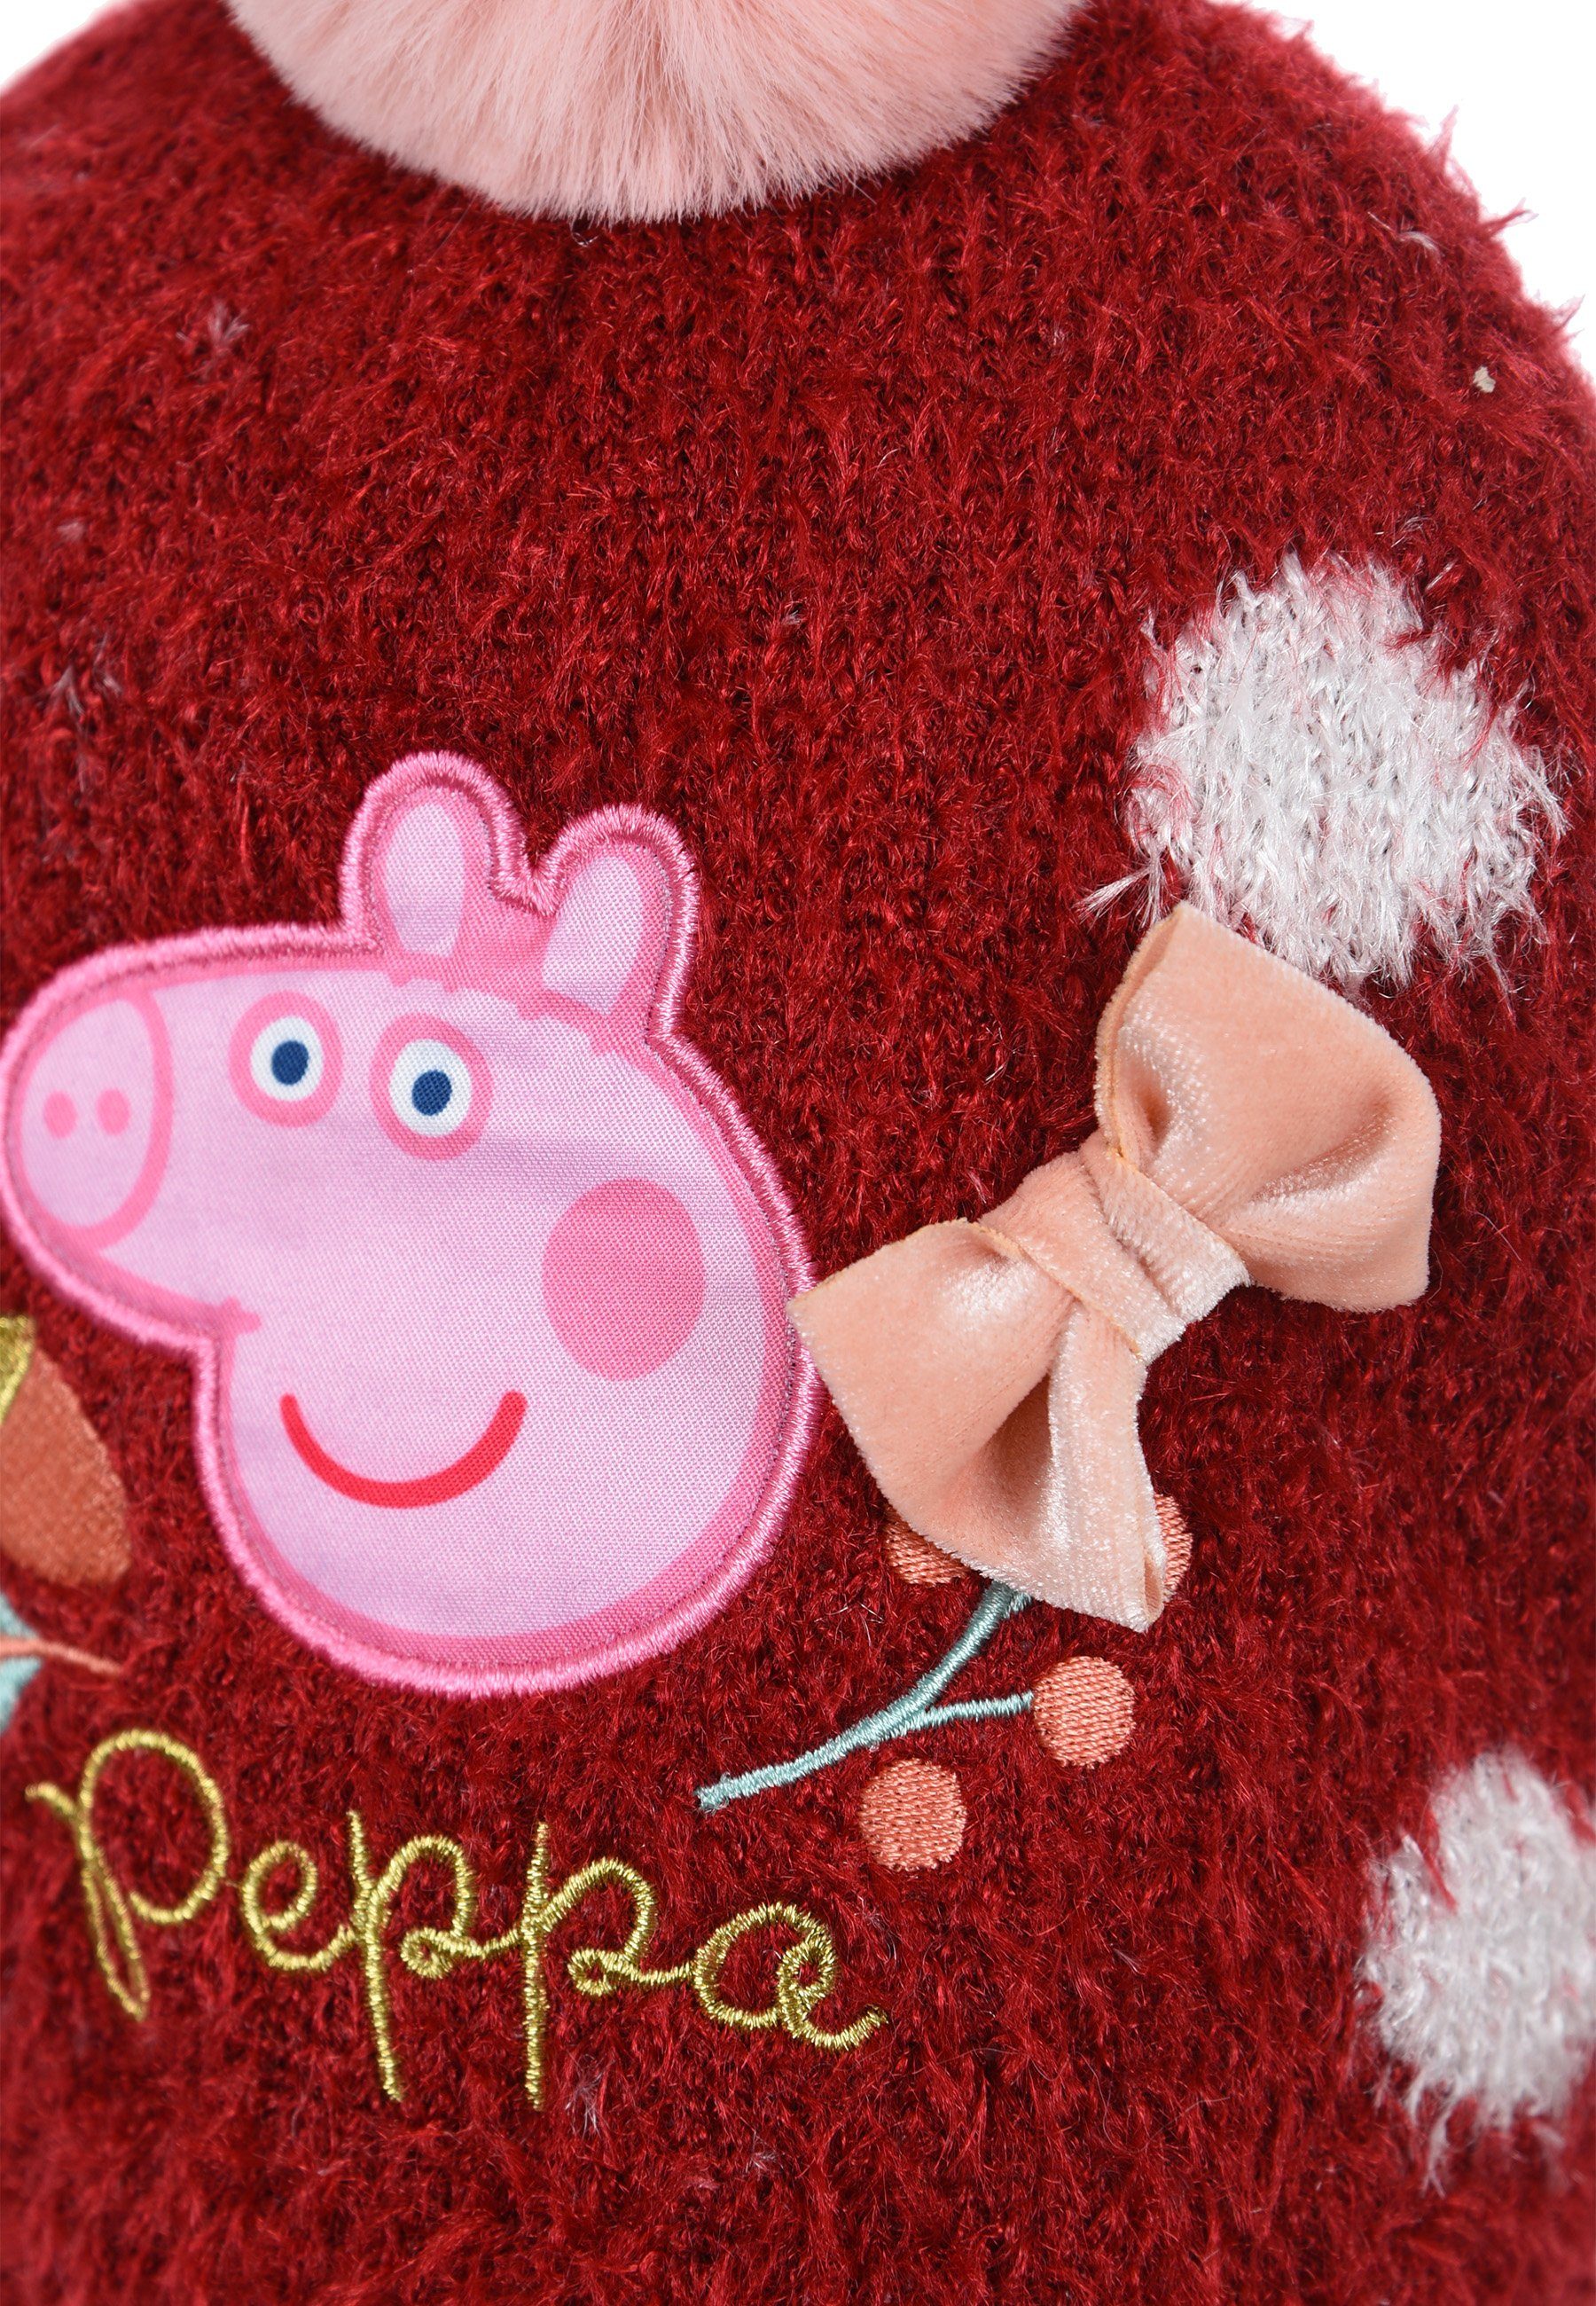 Winter-Set Pink Peppa Winter-Mütze Pig Handschuhe Wutz Bommelmütze Mädchen Peppa (SET) Kinder